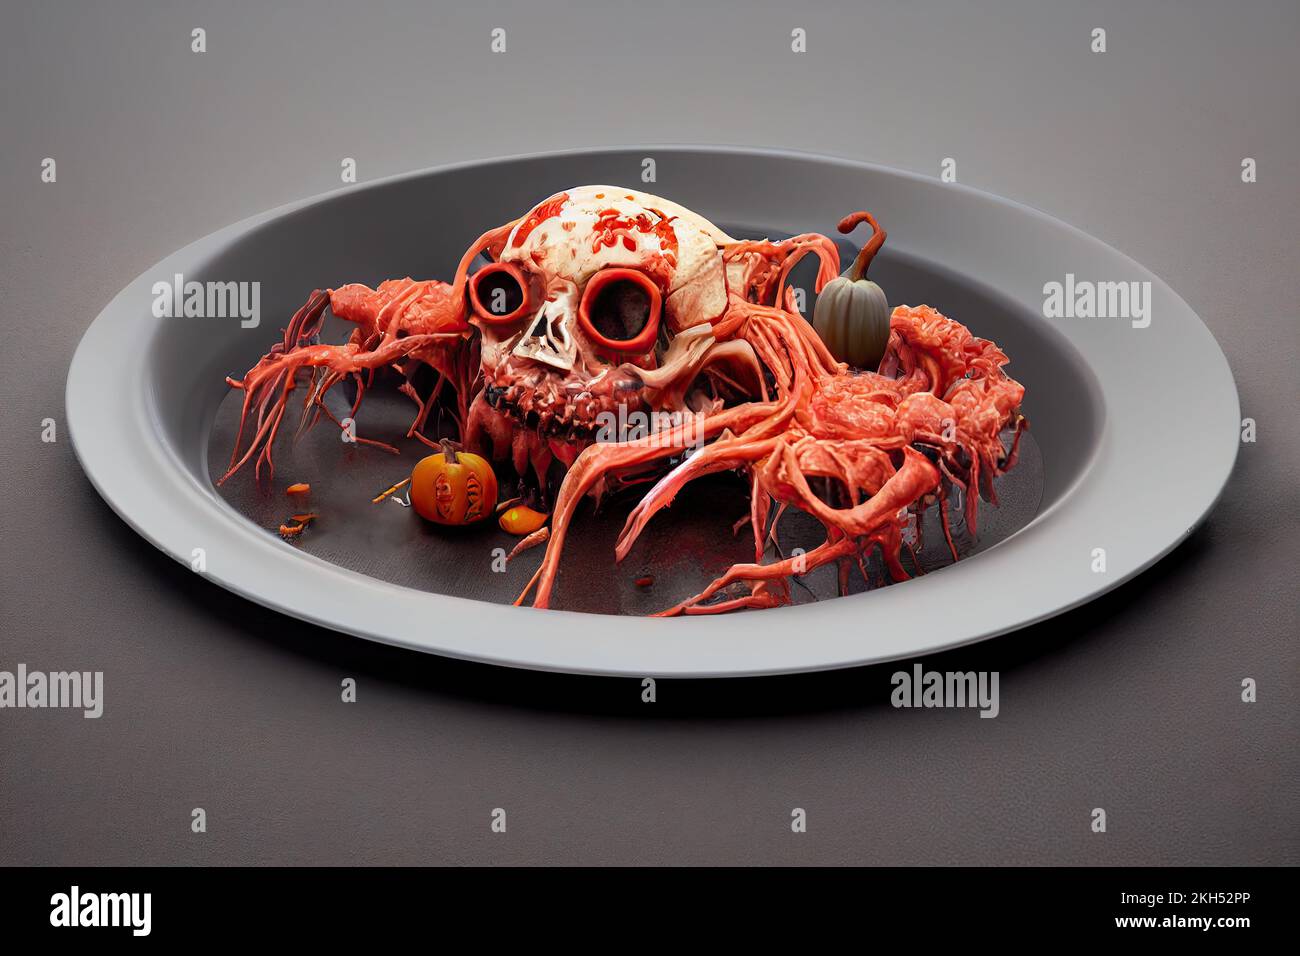 Anatomischer menschlicher Teil, Gehirnteile, Eingeweide, Schädel und Knochen mit giftigem Gemüse, die eine schreckliche Speise bilden. Ein Halloween-Dinner-Thema und Stockfoto